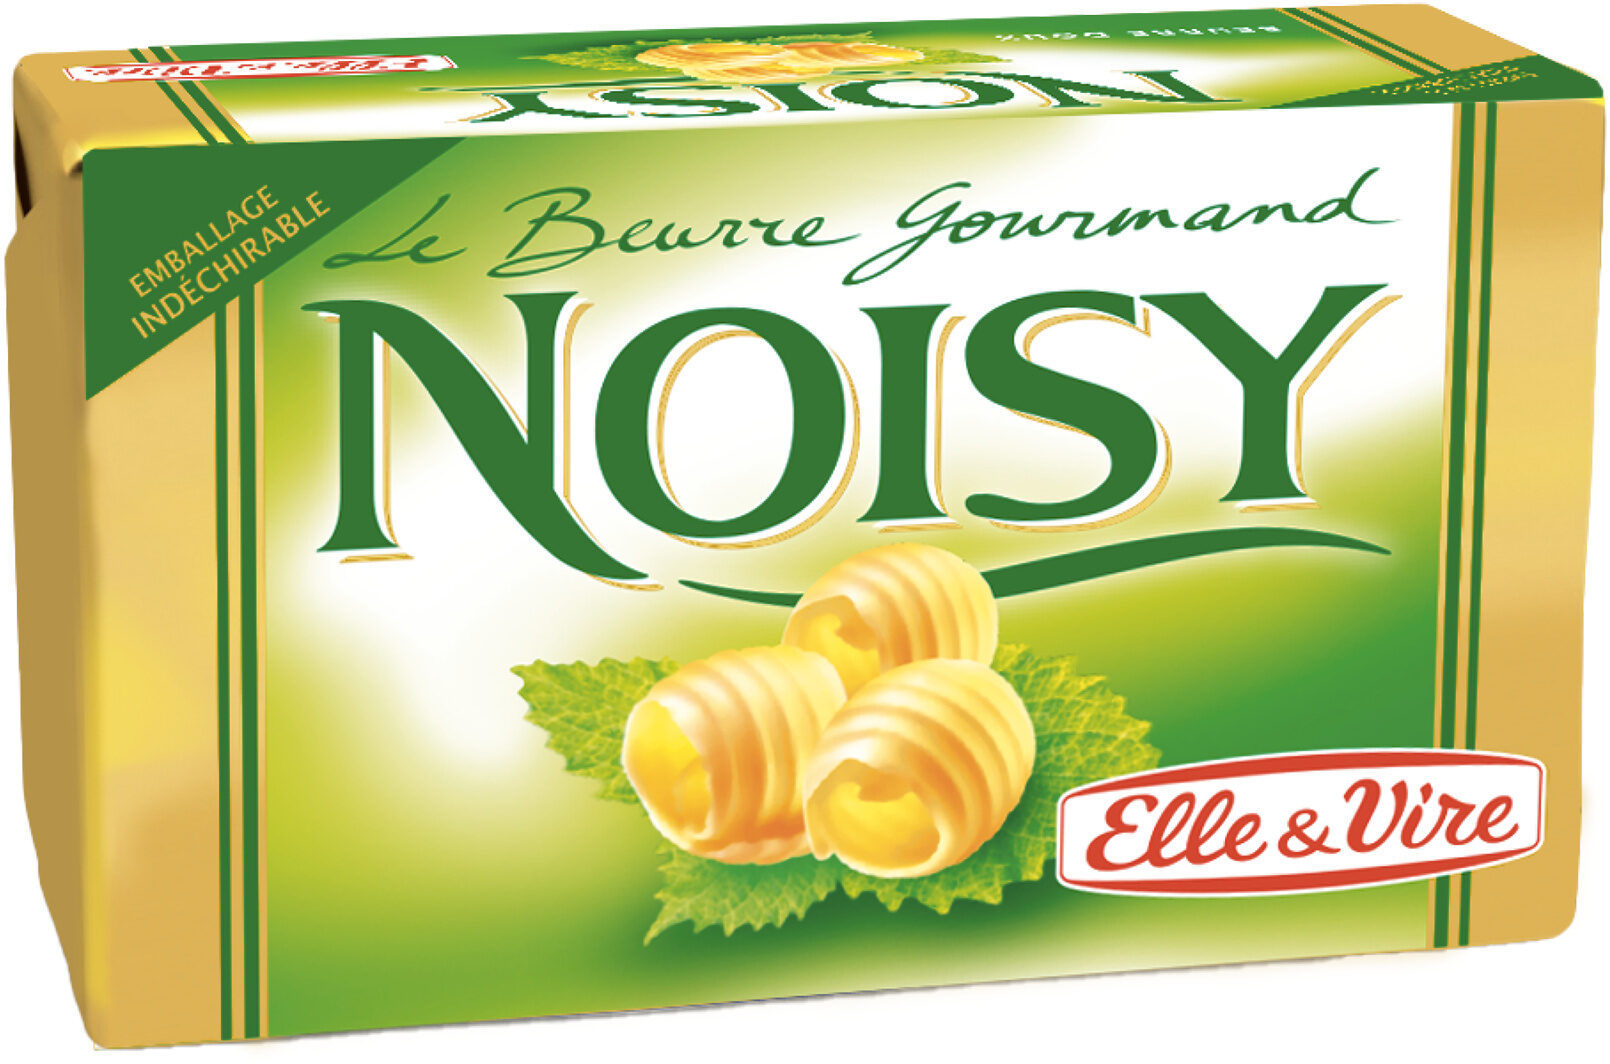 Le Beurre Noisy doux - Product - fr